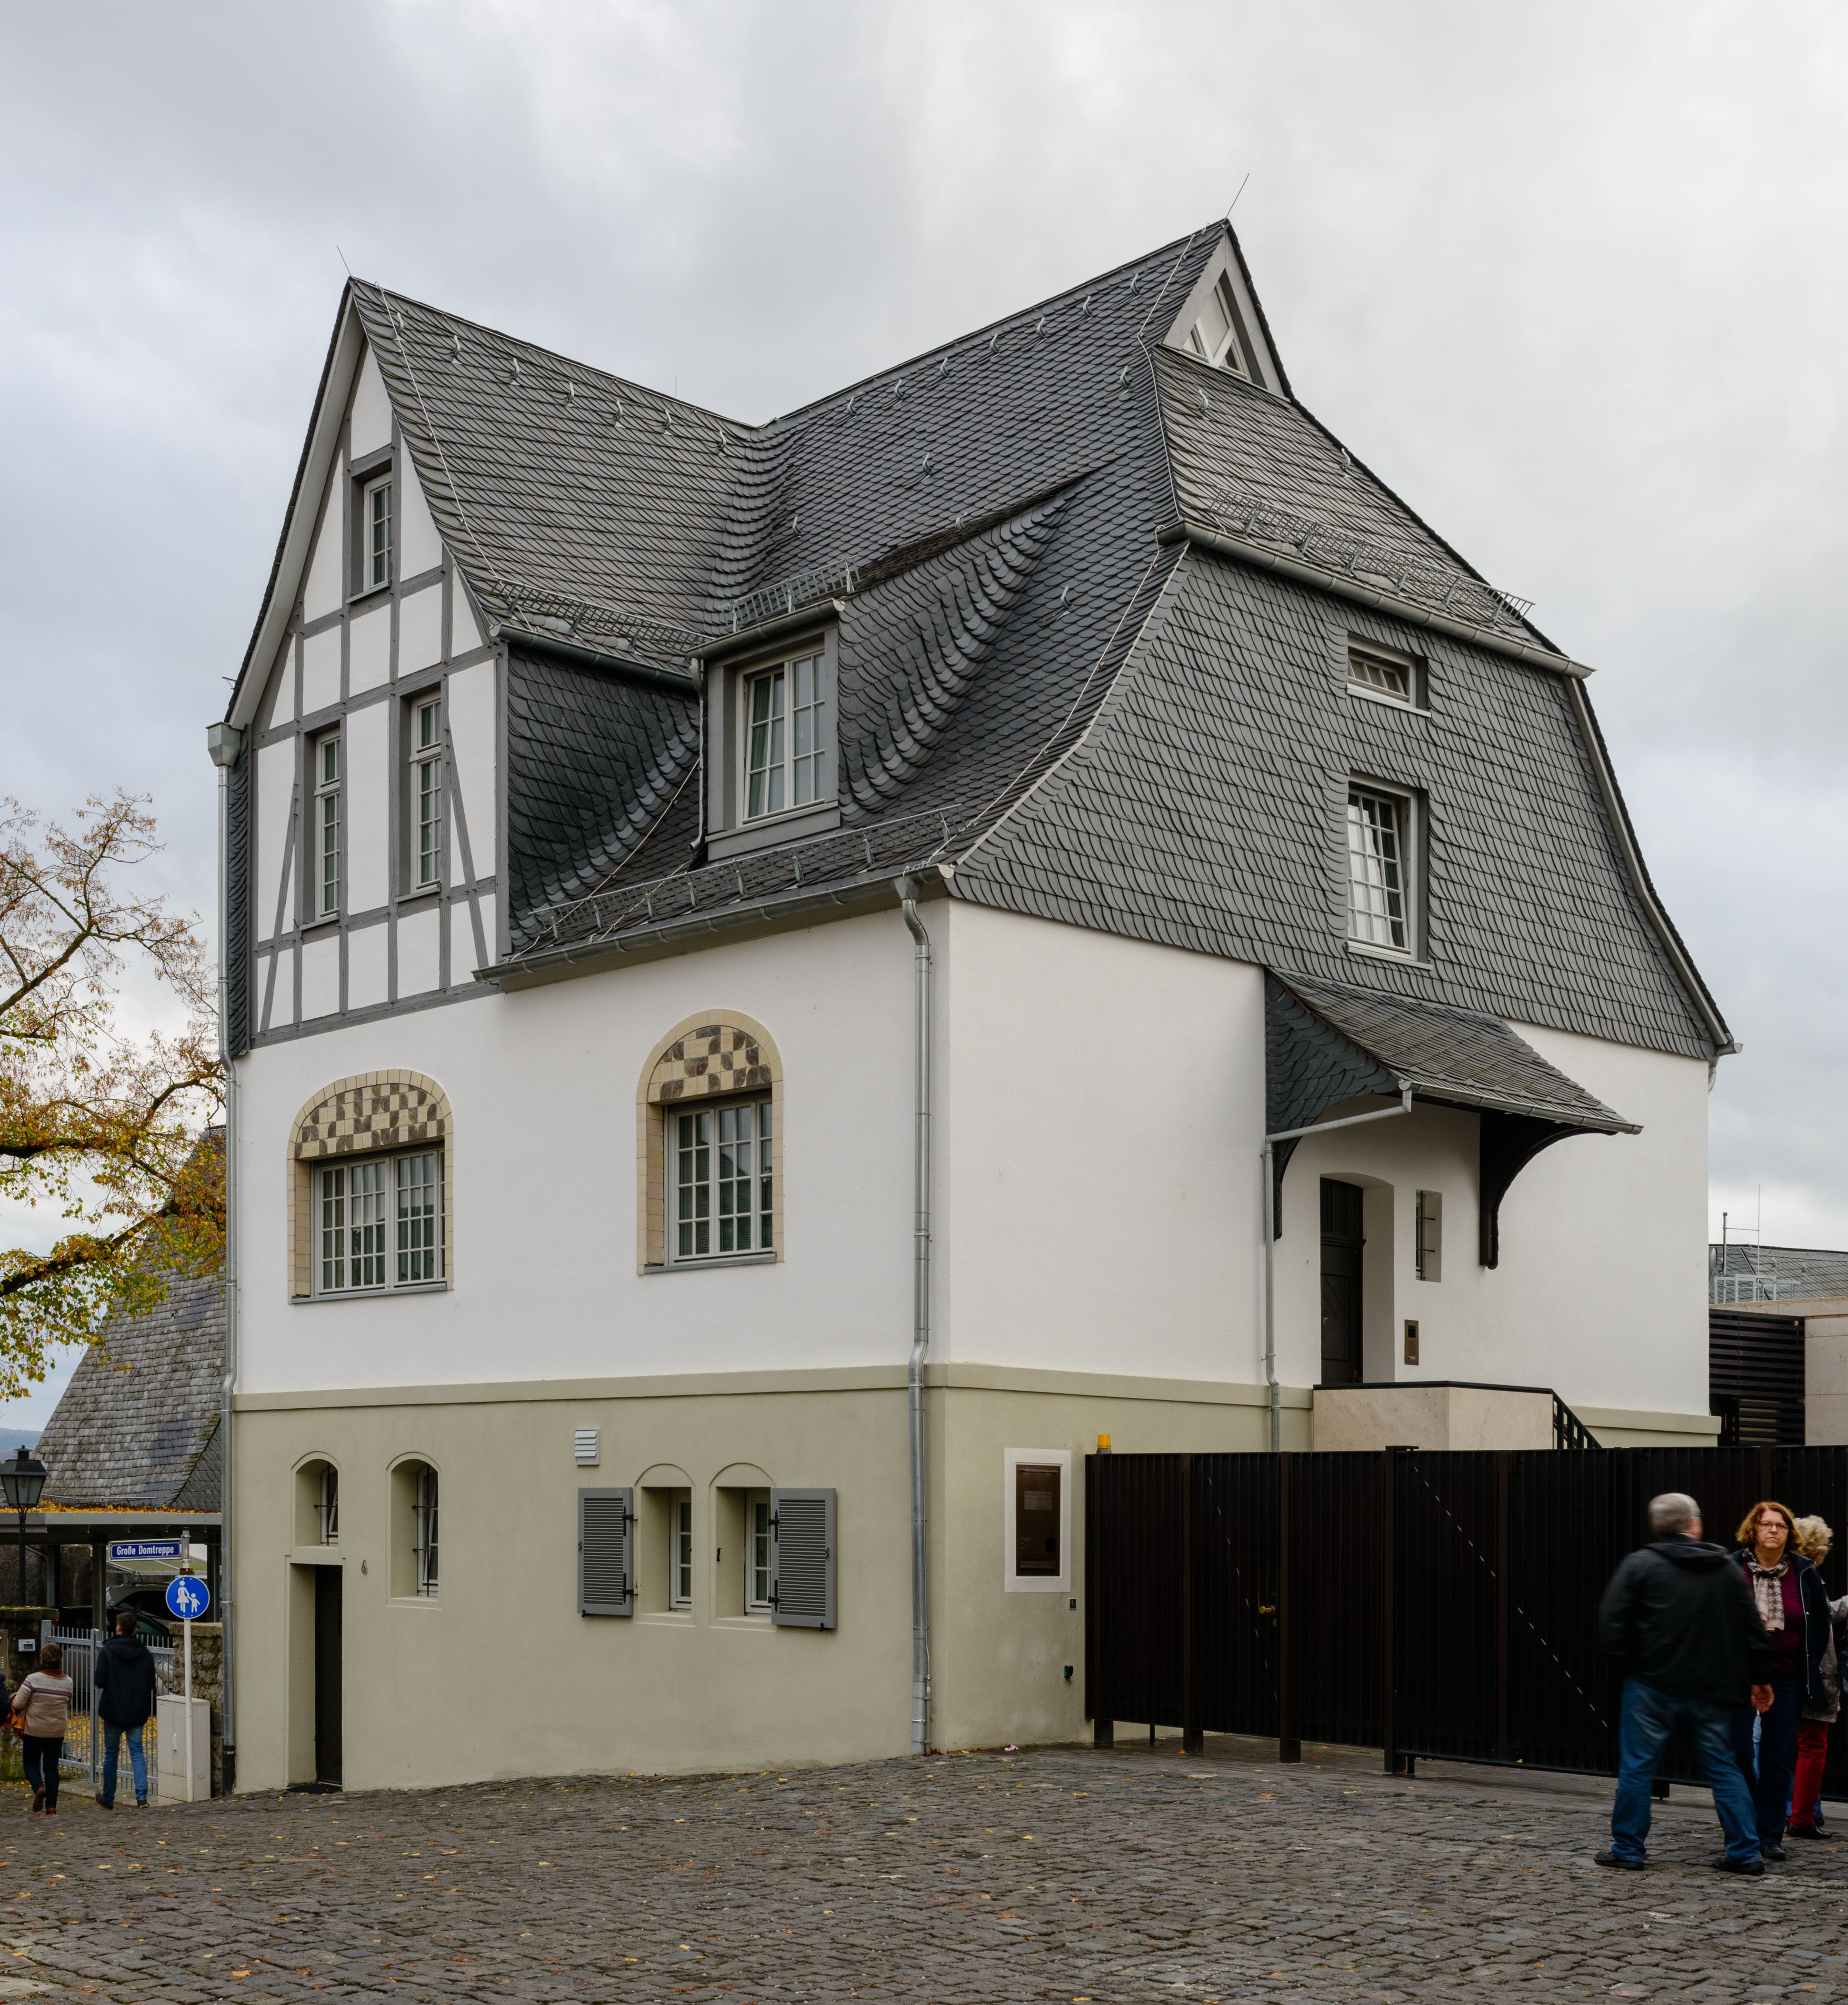 Bischofssitz Limburg - Residence of the bishop of Limburg - Schwesternhaus - October 26th 2013 - 01